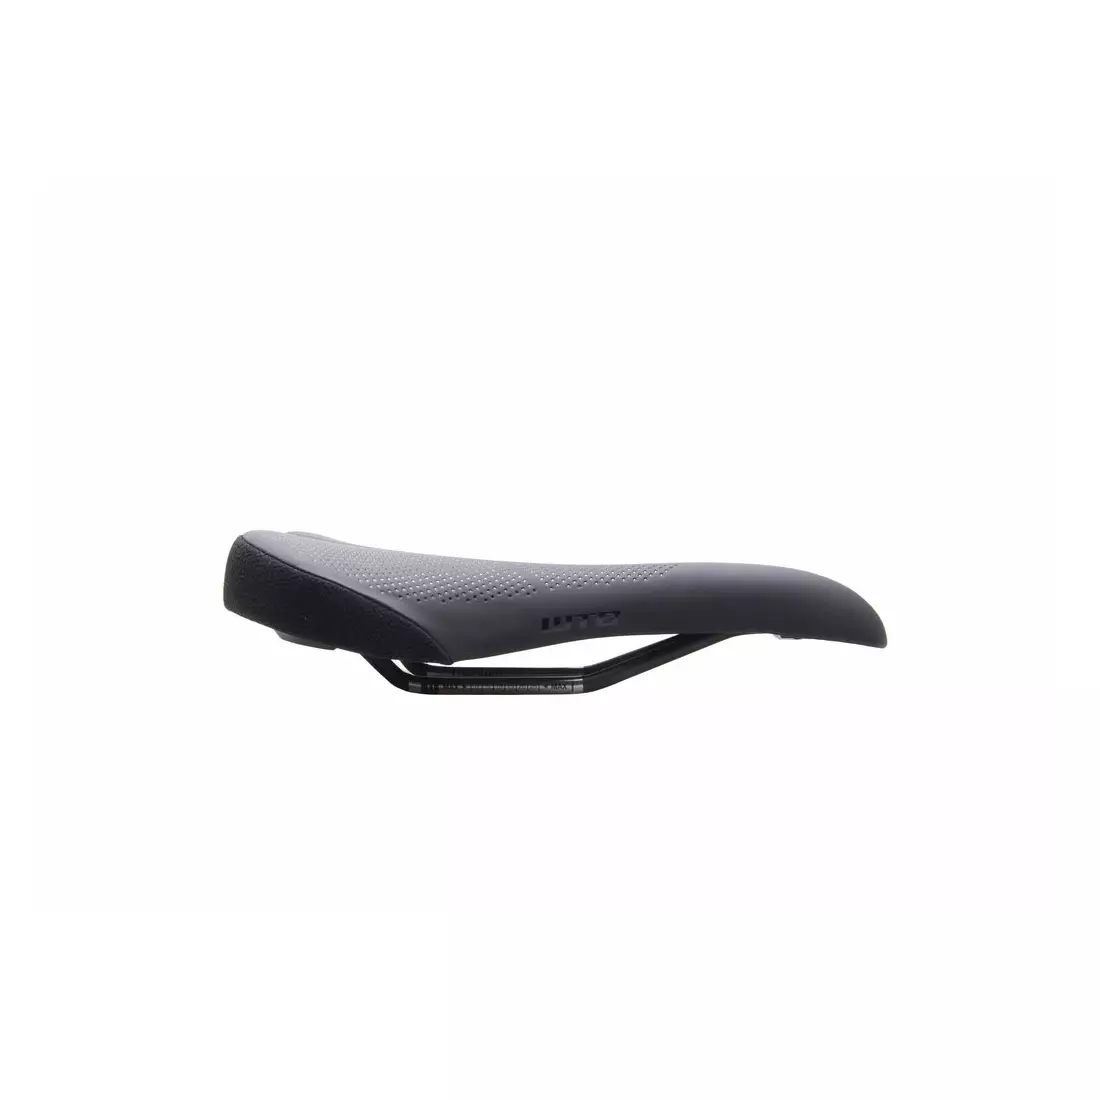 WTB bicycle seat ROCKET Cromoly wide black